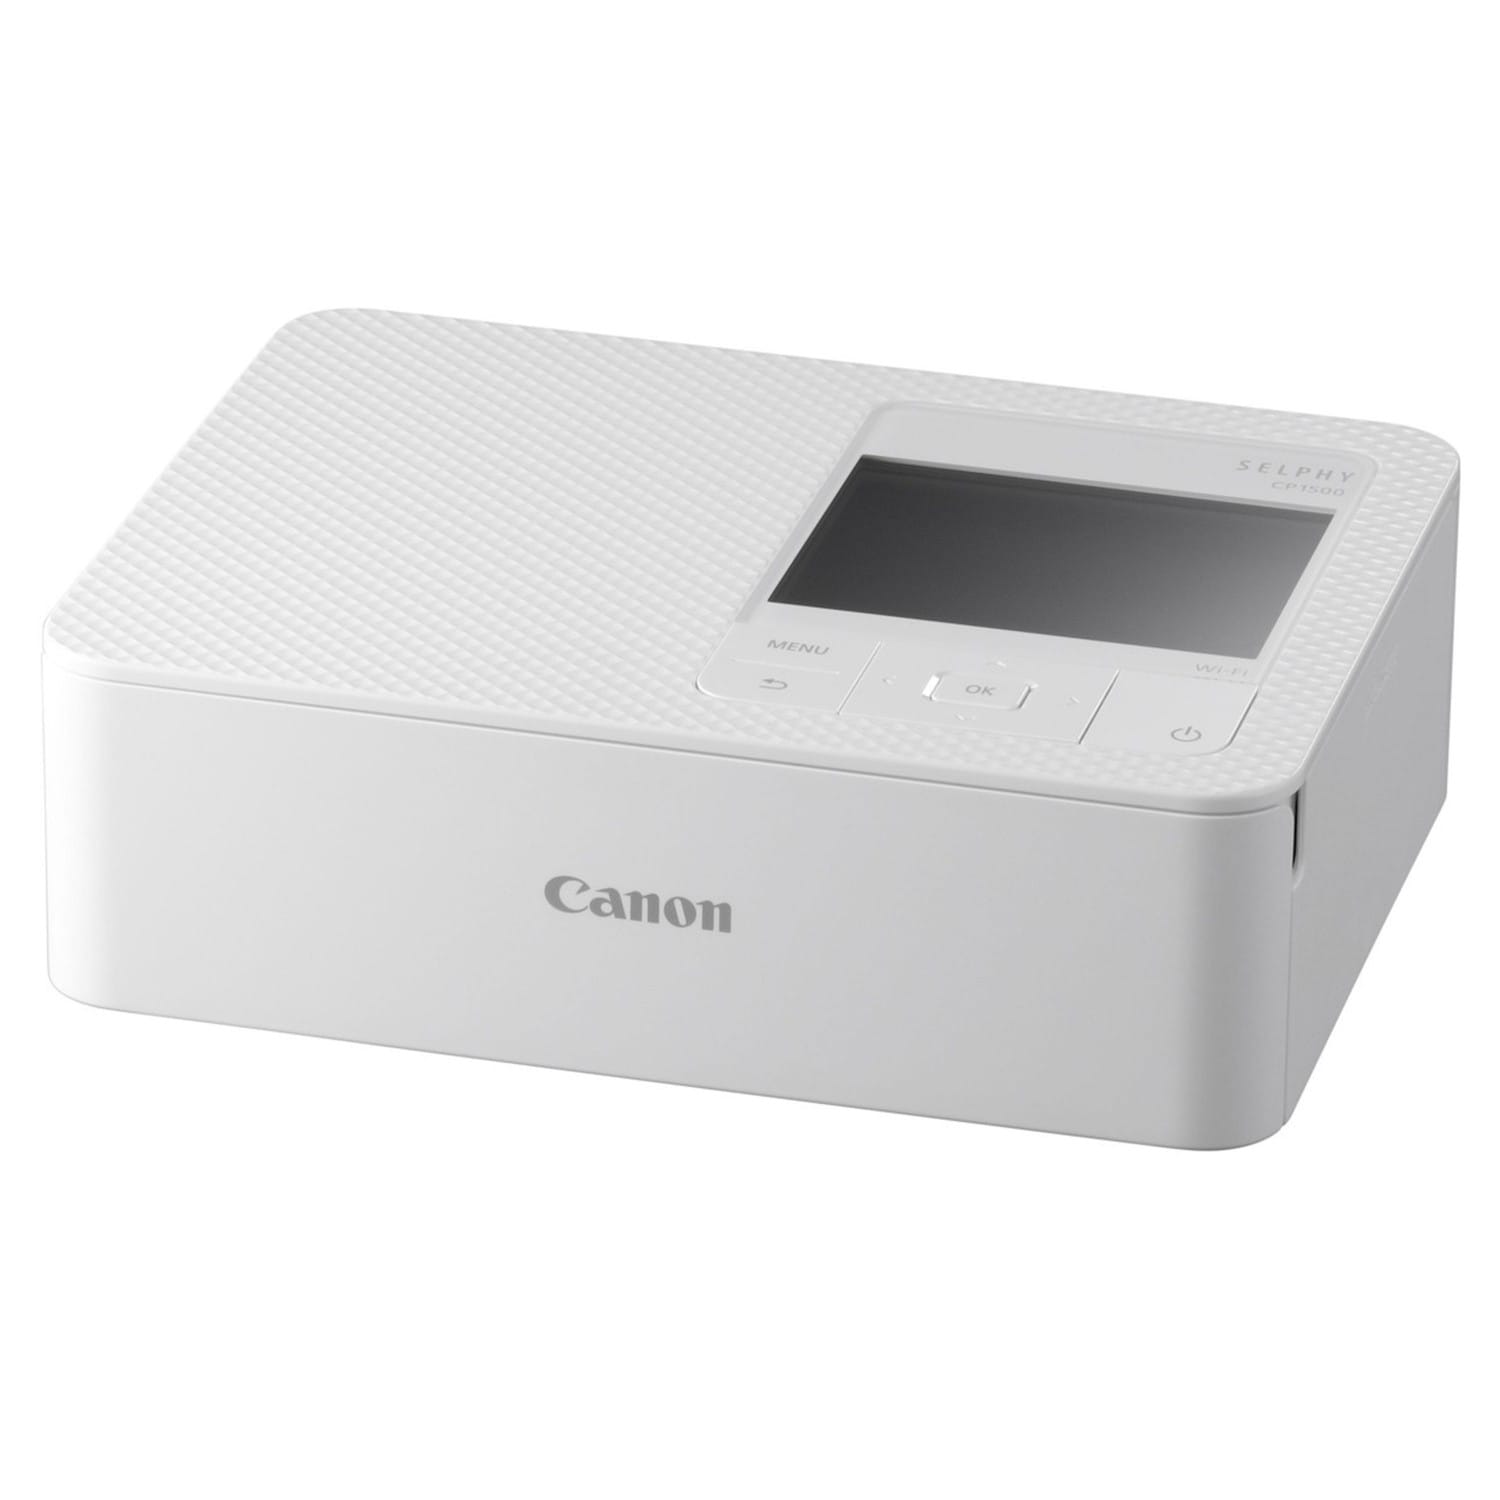 CANON CANON - CP1300 - Blanc - Imprimante photo + KP-36IP  Photo - 10x15  cm - 36 feuilles + Kit Cartouches pour Imprimantes Photo Portables pas cher  